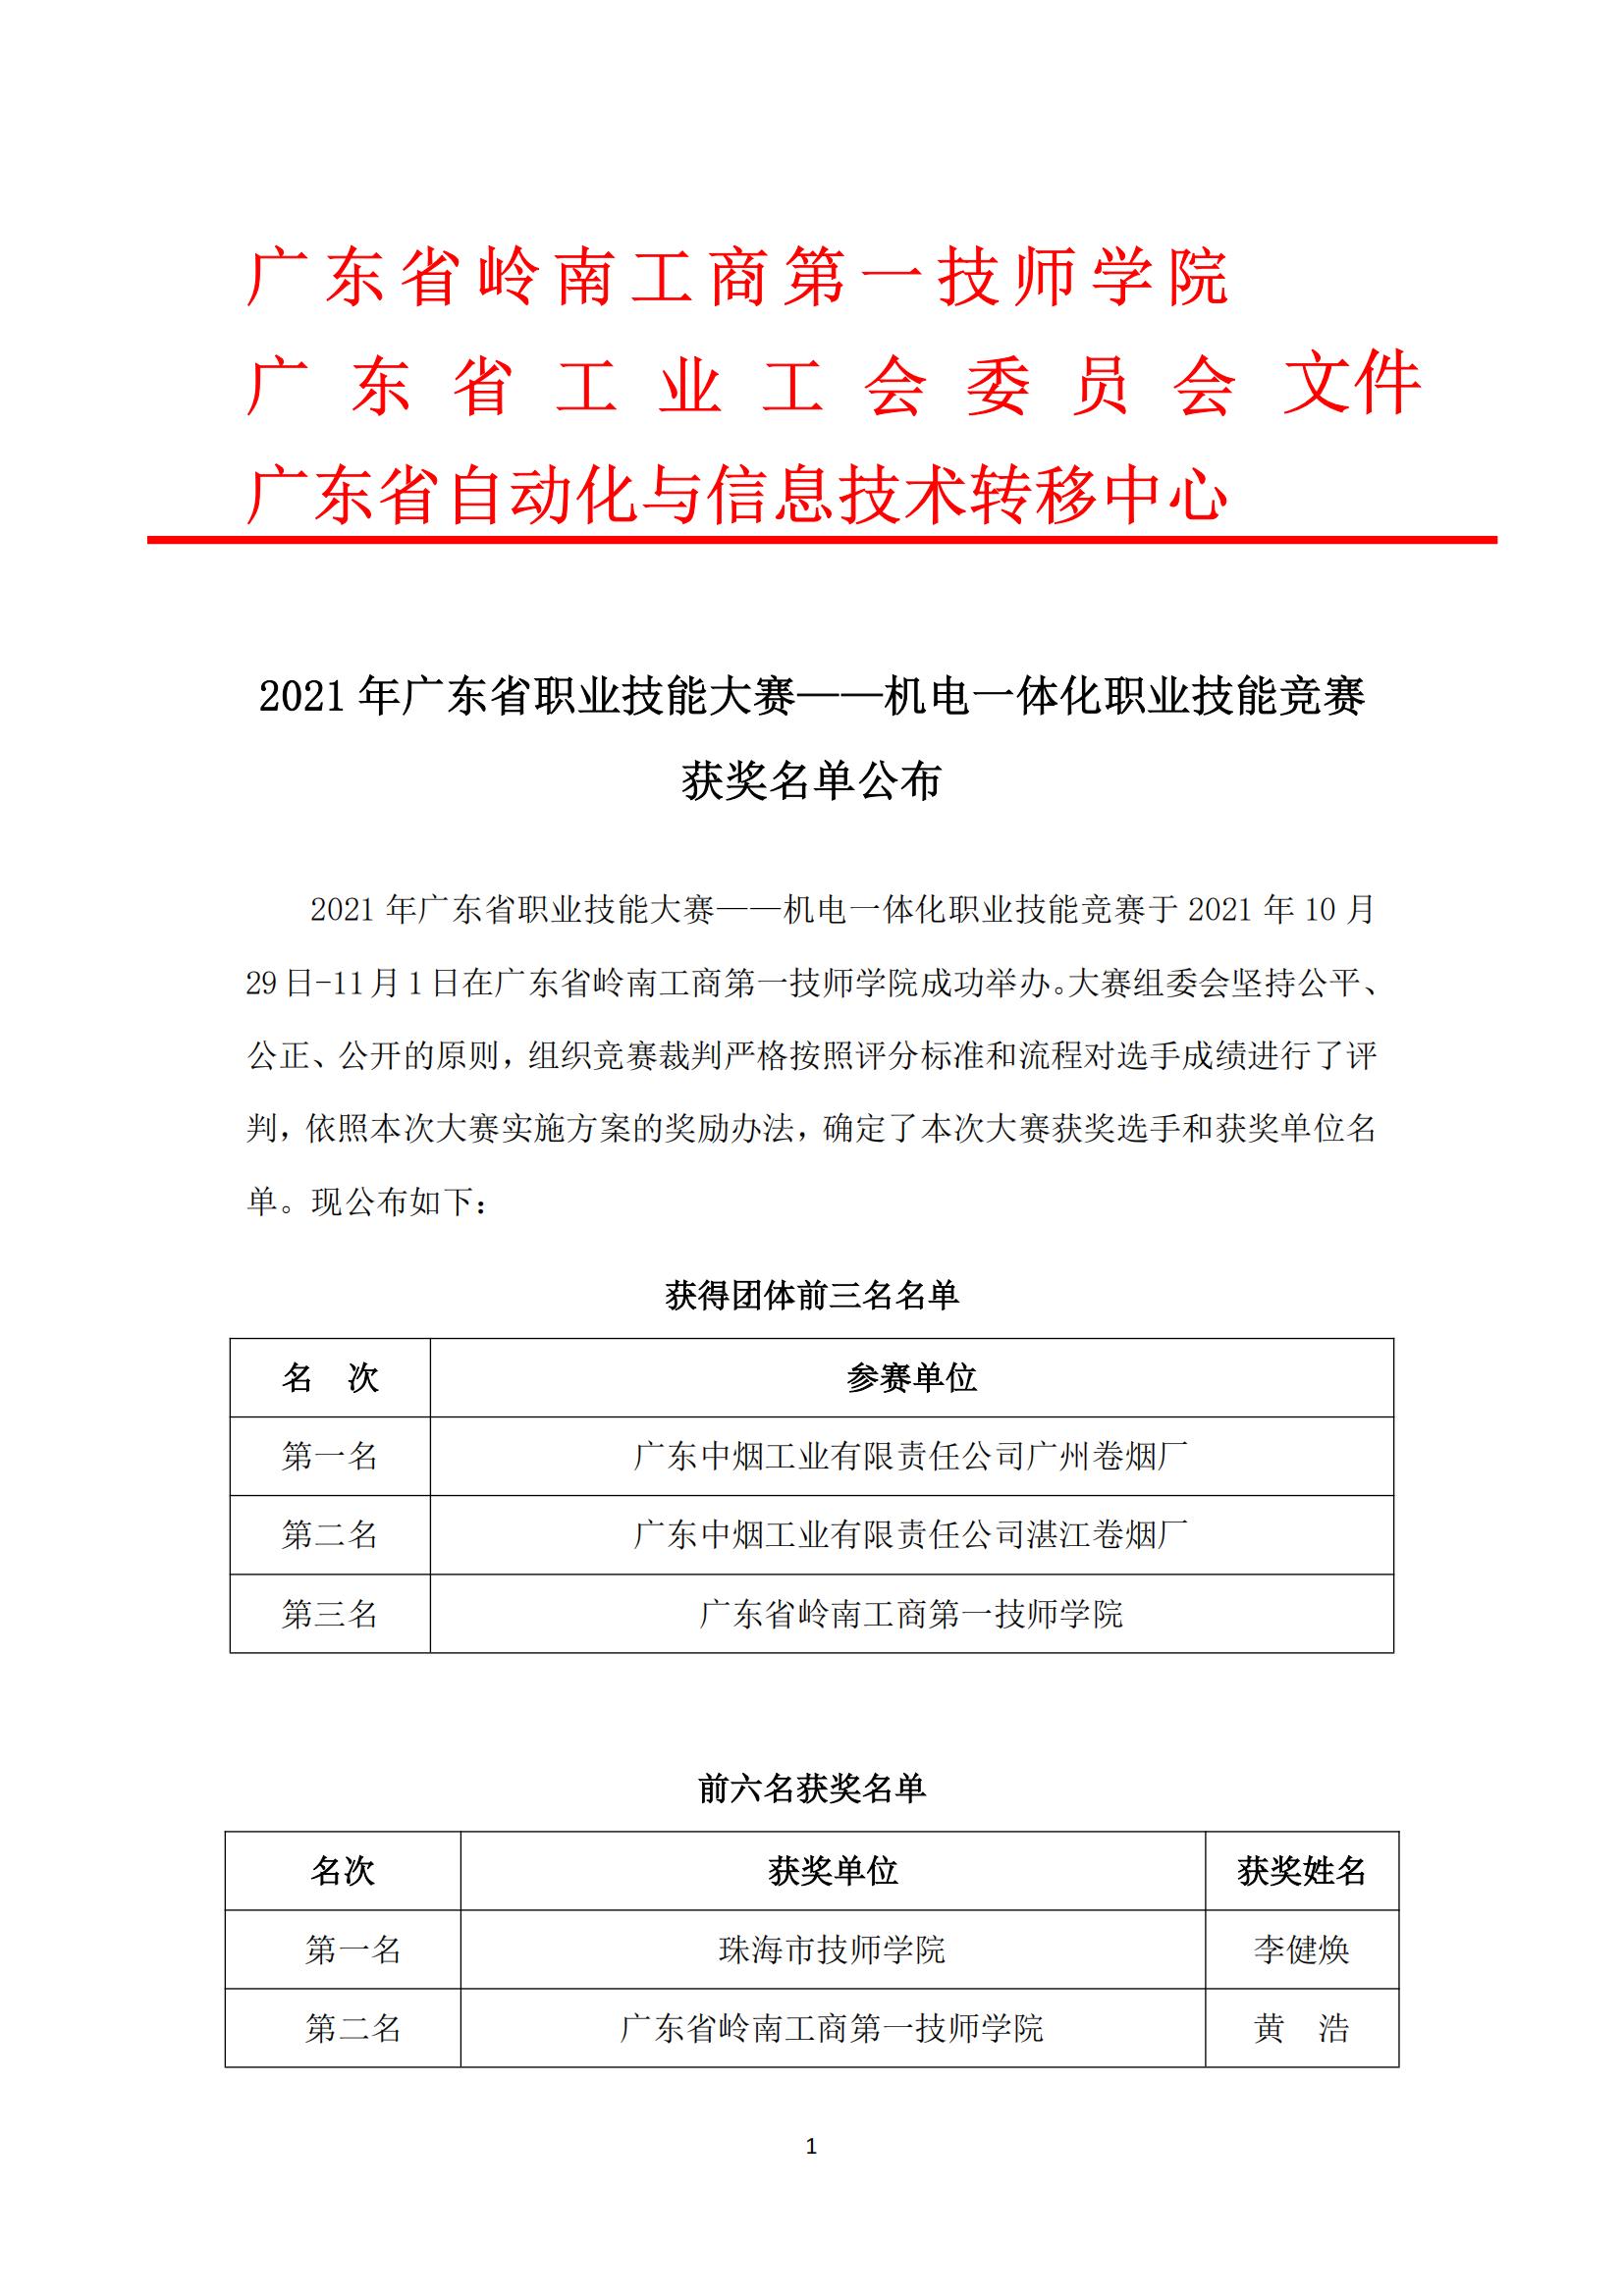 2021年广东省职业技能大赛——机电一体化职业技能竞赛获奖名单公布_00.jpg